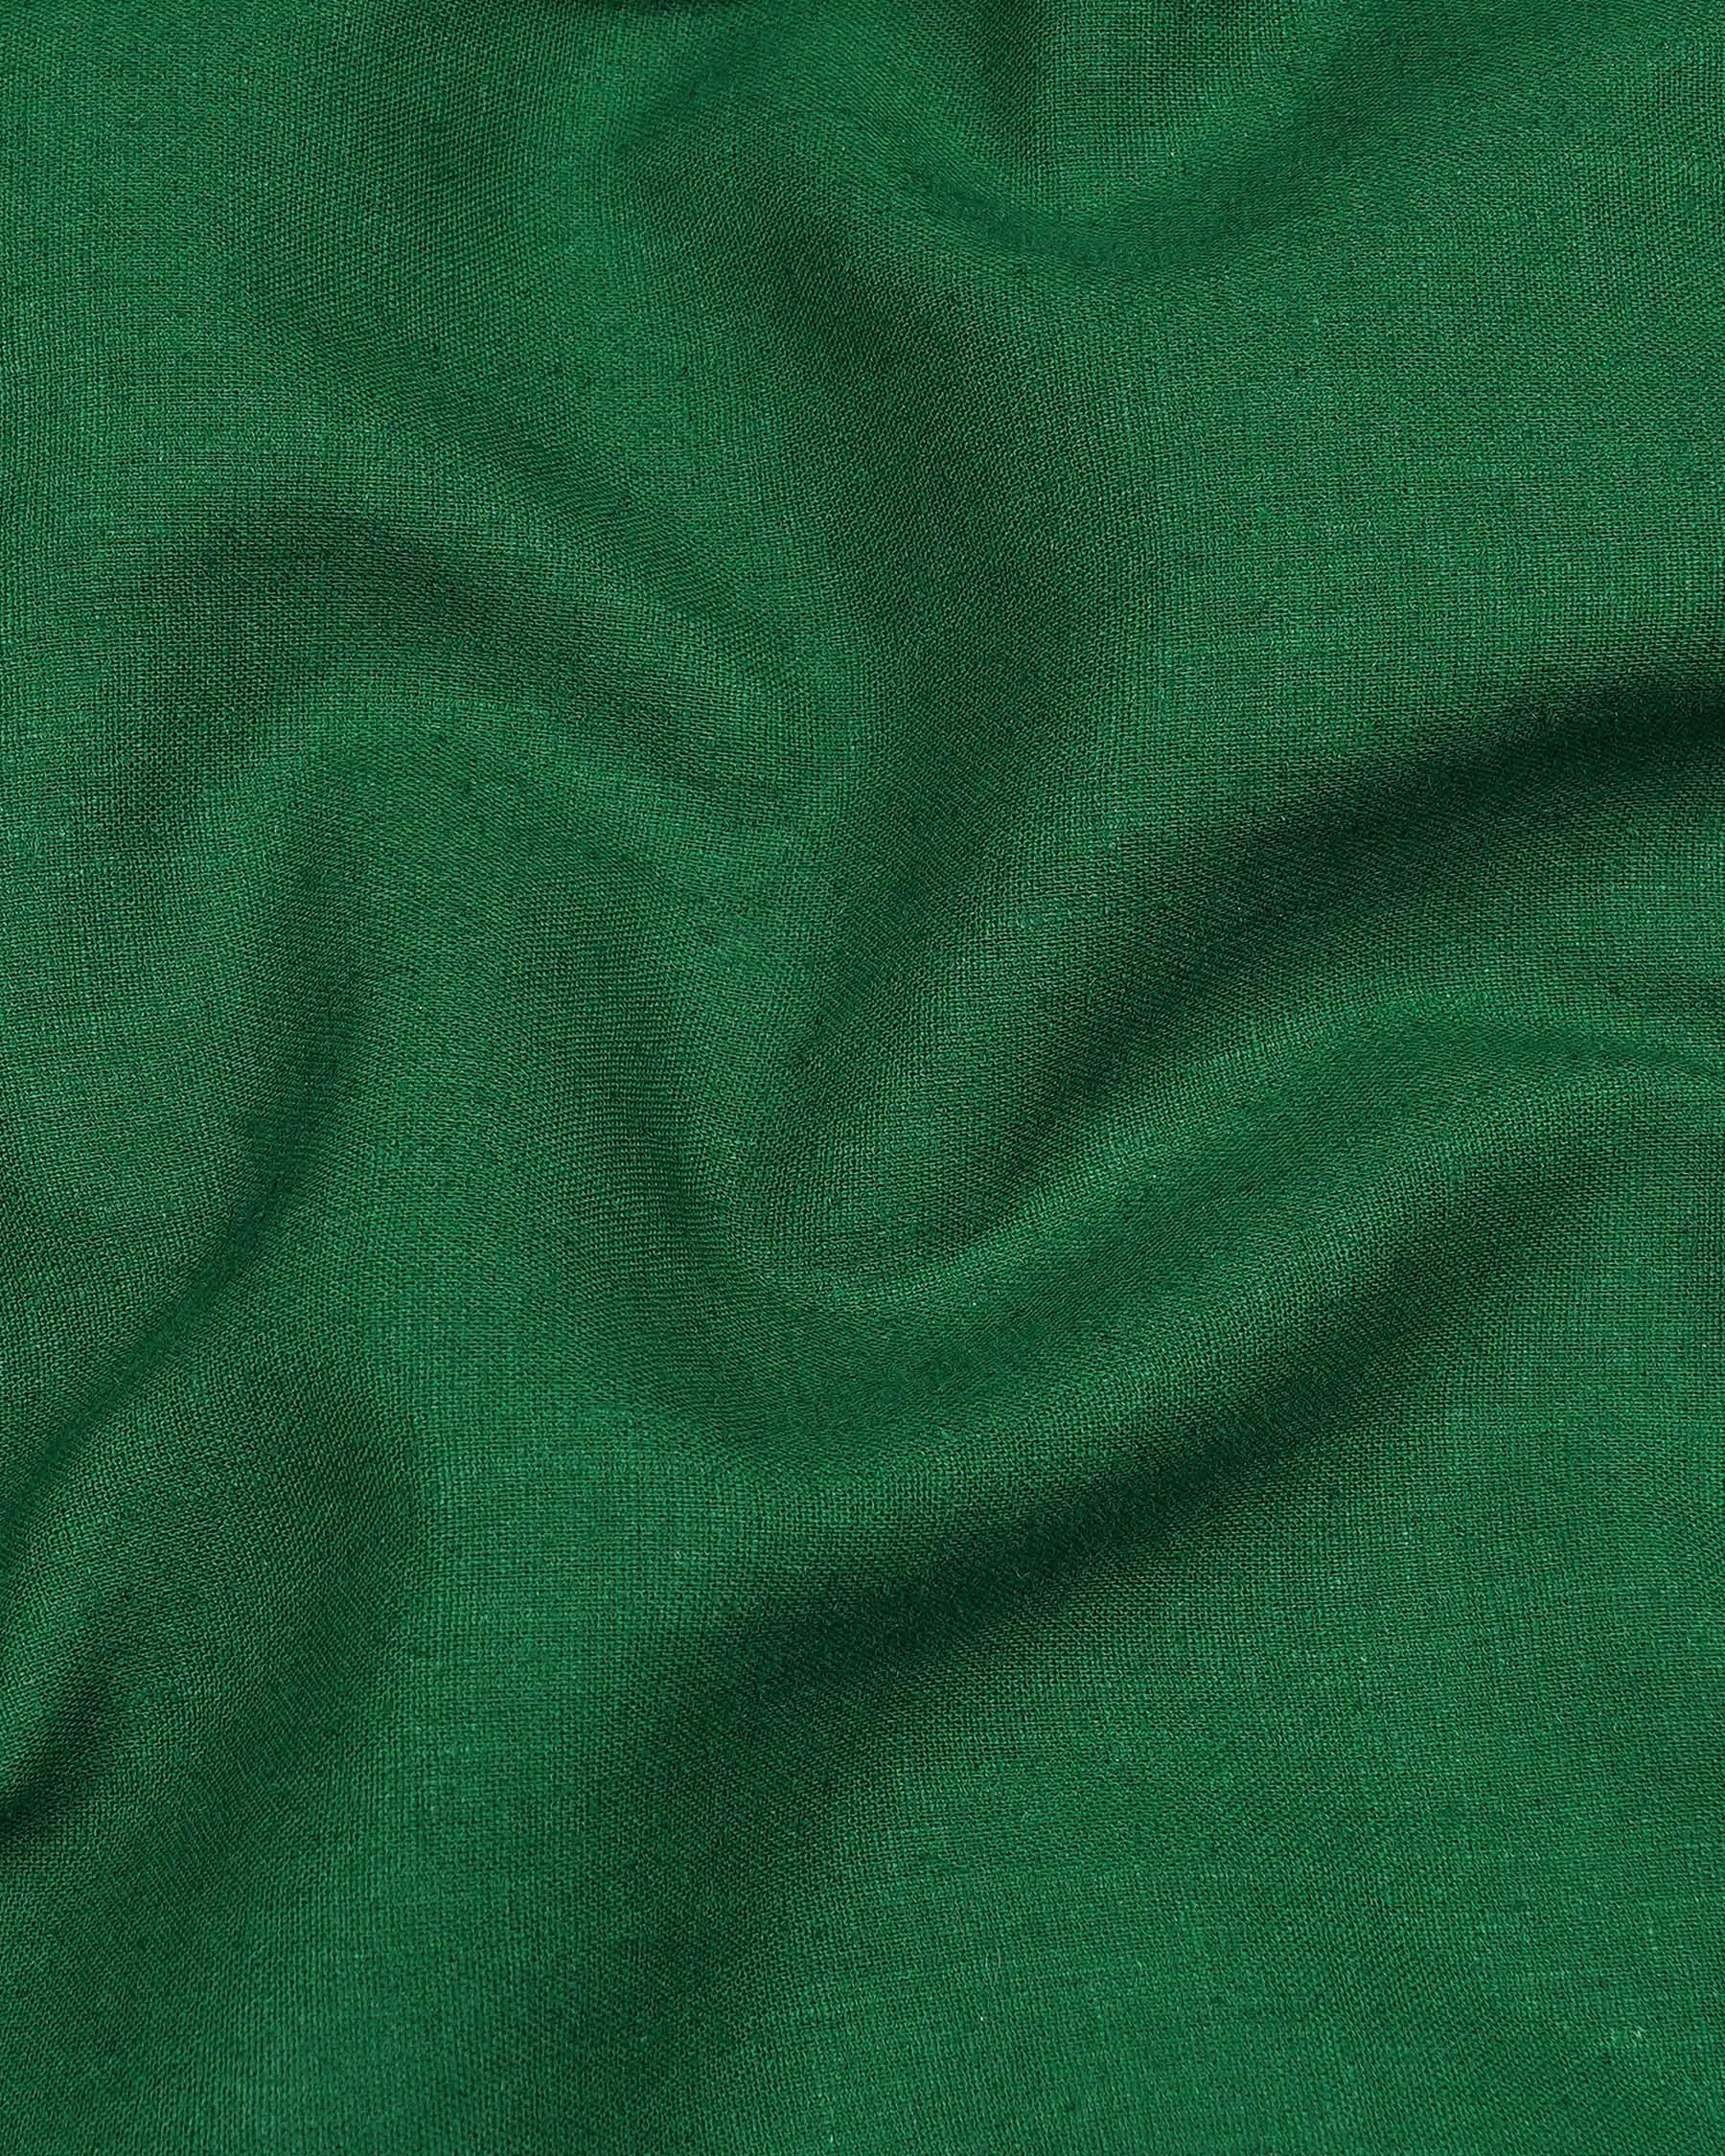 Crusoe Green Luxurious Linen Shirt 7991-M-38, 7991-M-H-38, 7991-M-39, 7991-M-H-39, 7991-M-40, 7991-M-H-40, 7991-M-42, 7991-M-H-42, 7991-M-44, 7991-M-H-44, 7991-M-46, 7991-M-H-46, 7991-M-48, 7991-M-H-48, 7991-M-50, 7991-M-H-50, 7991-M-52, 7991-M-H-52